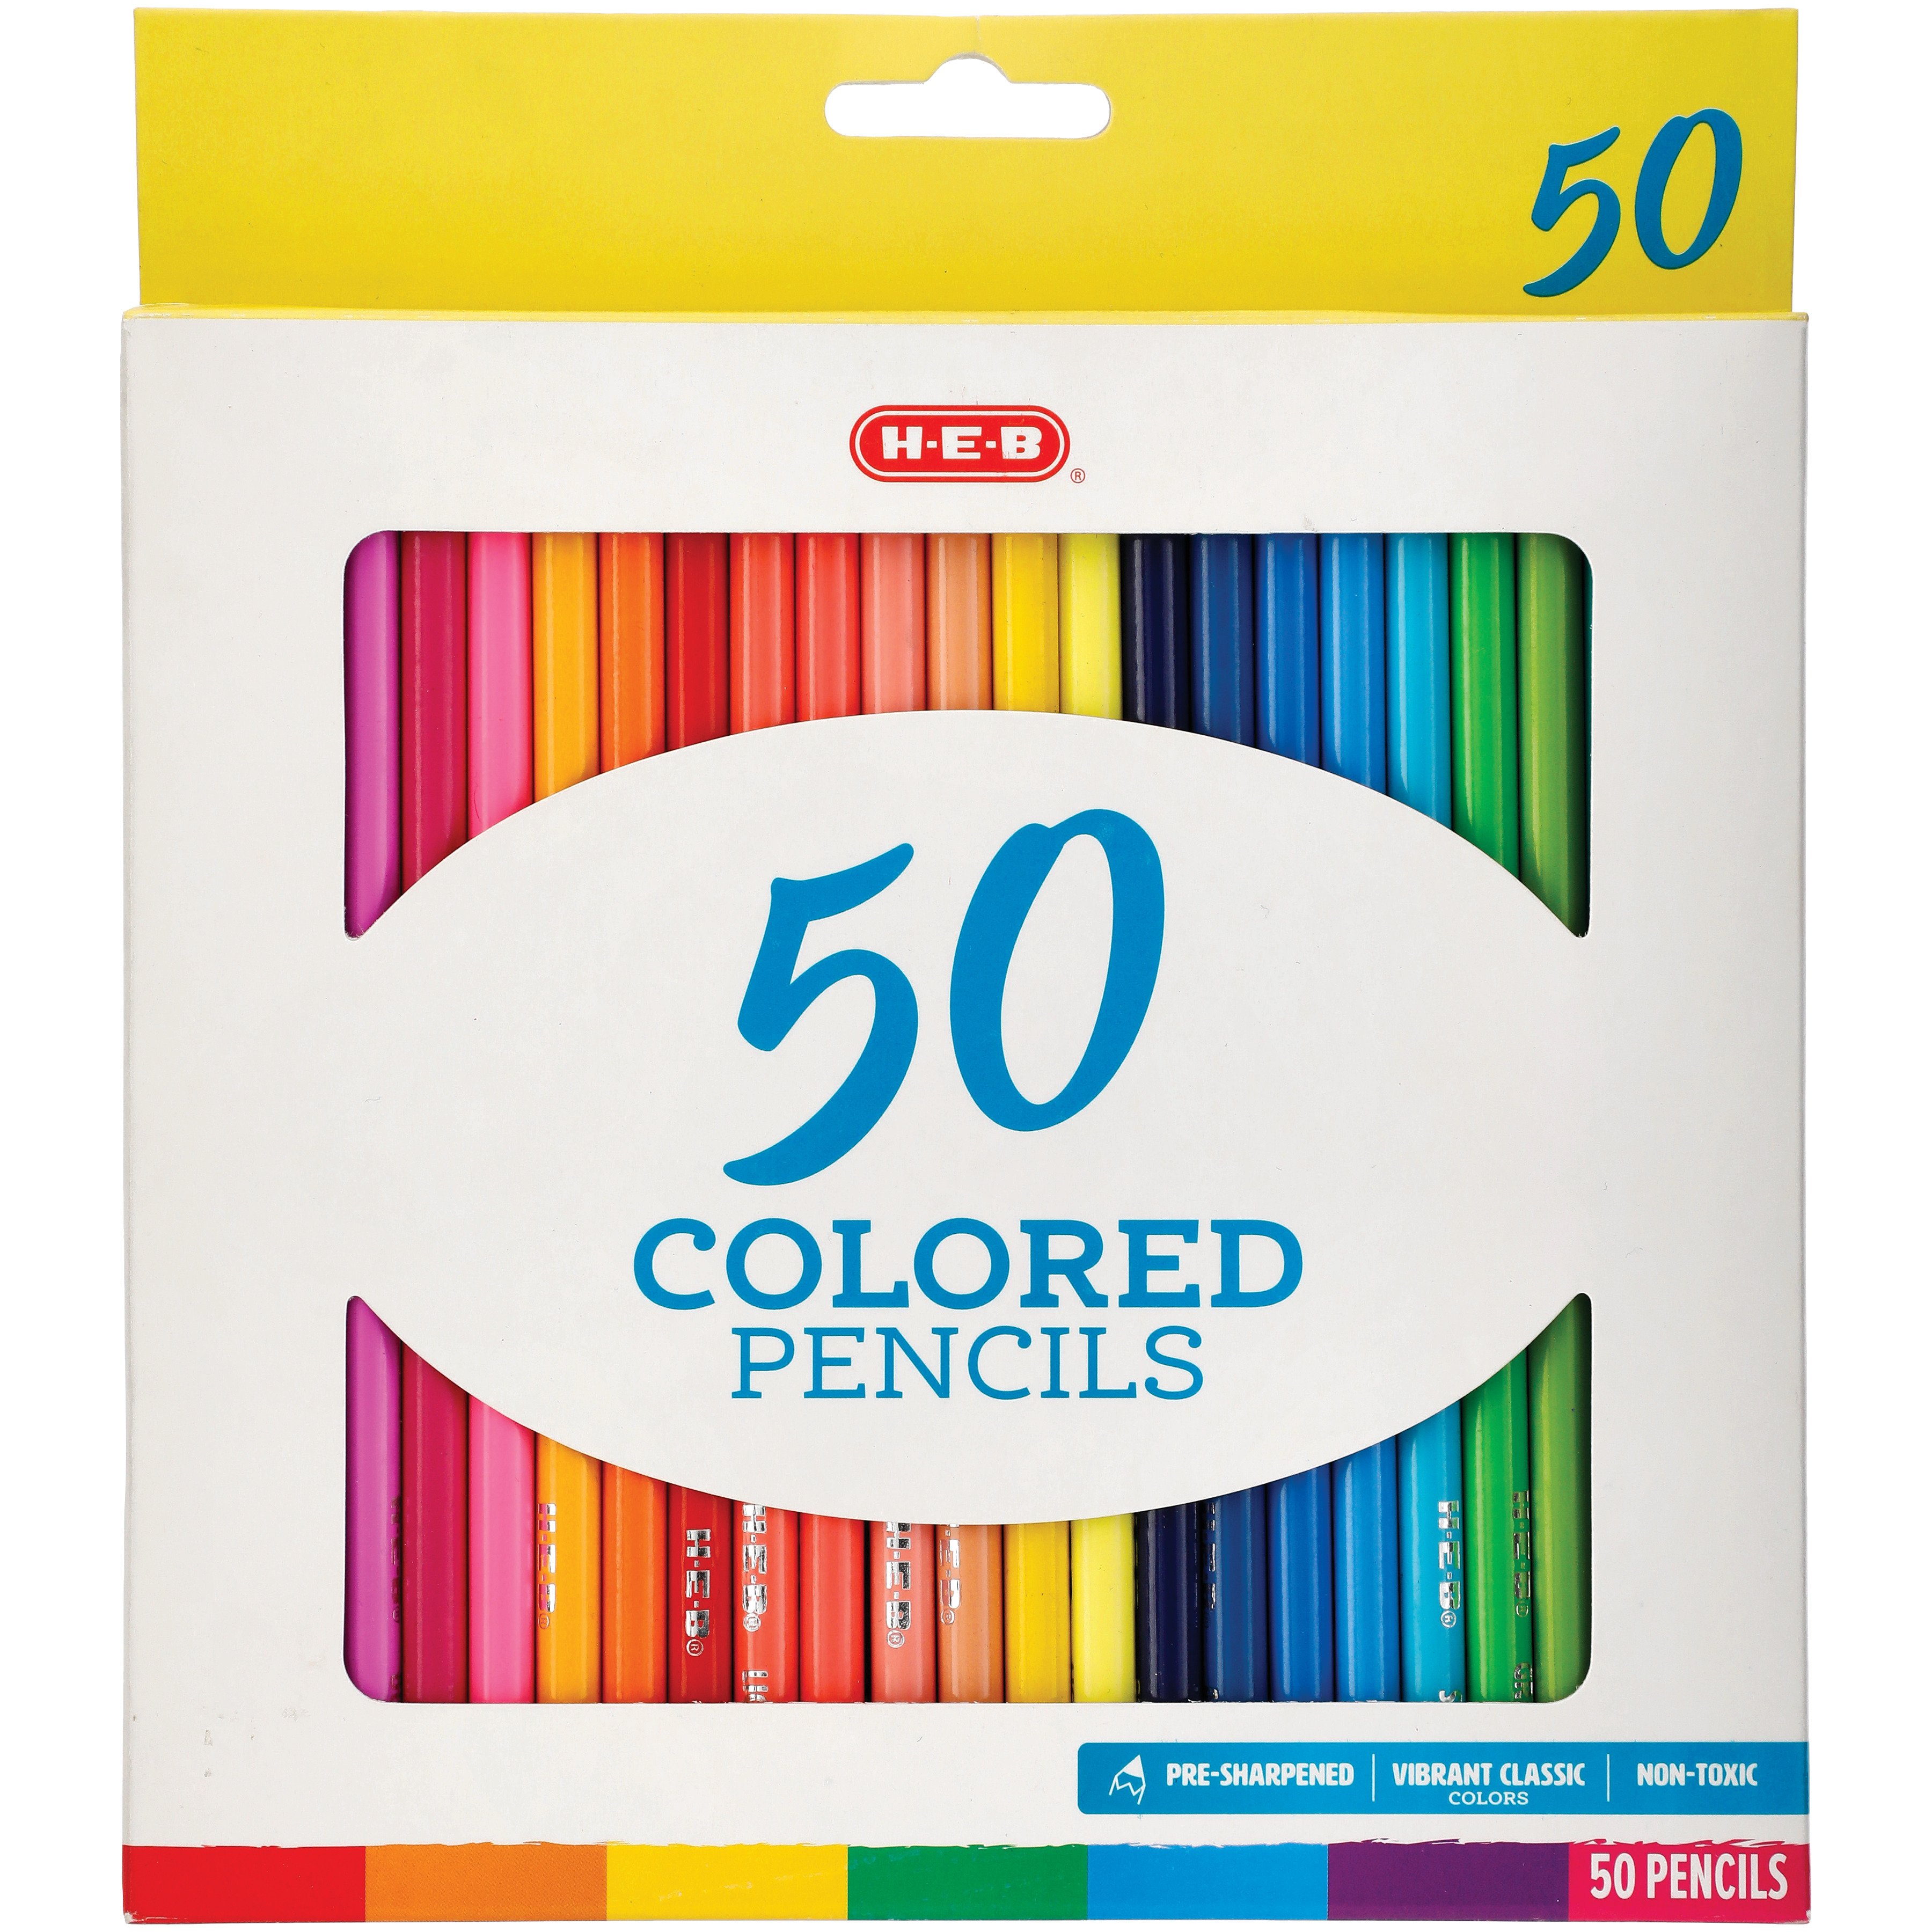  Colored Pencils, 50 Colored Pencils. Colored Pencils